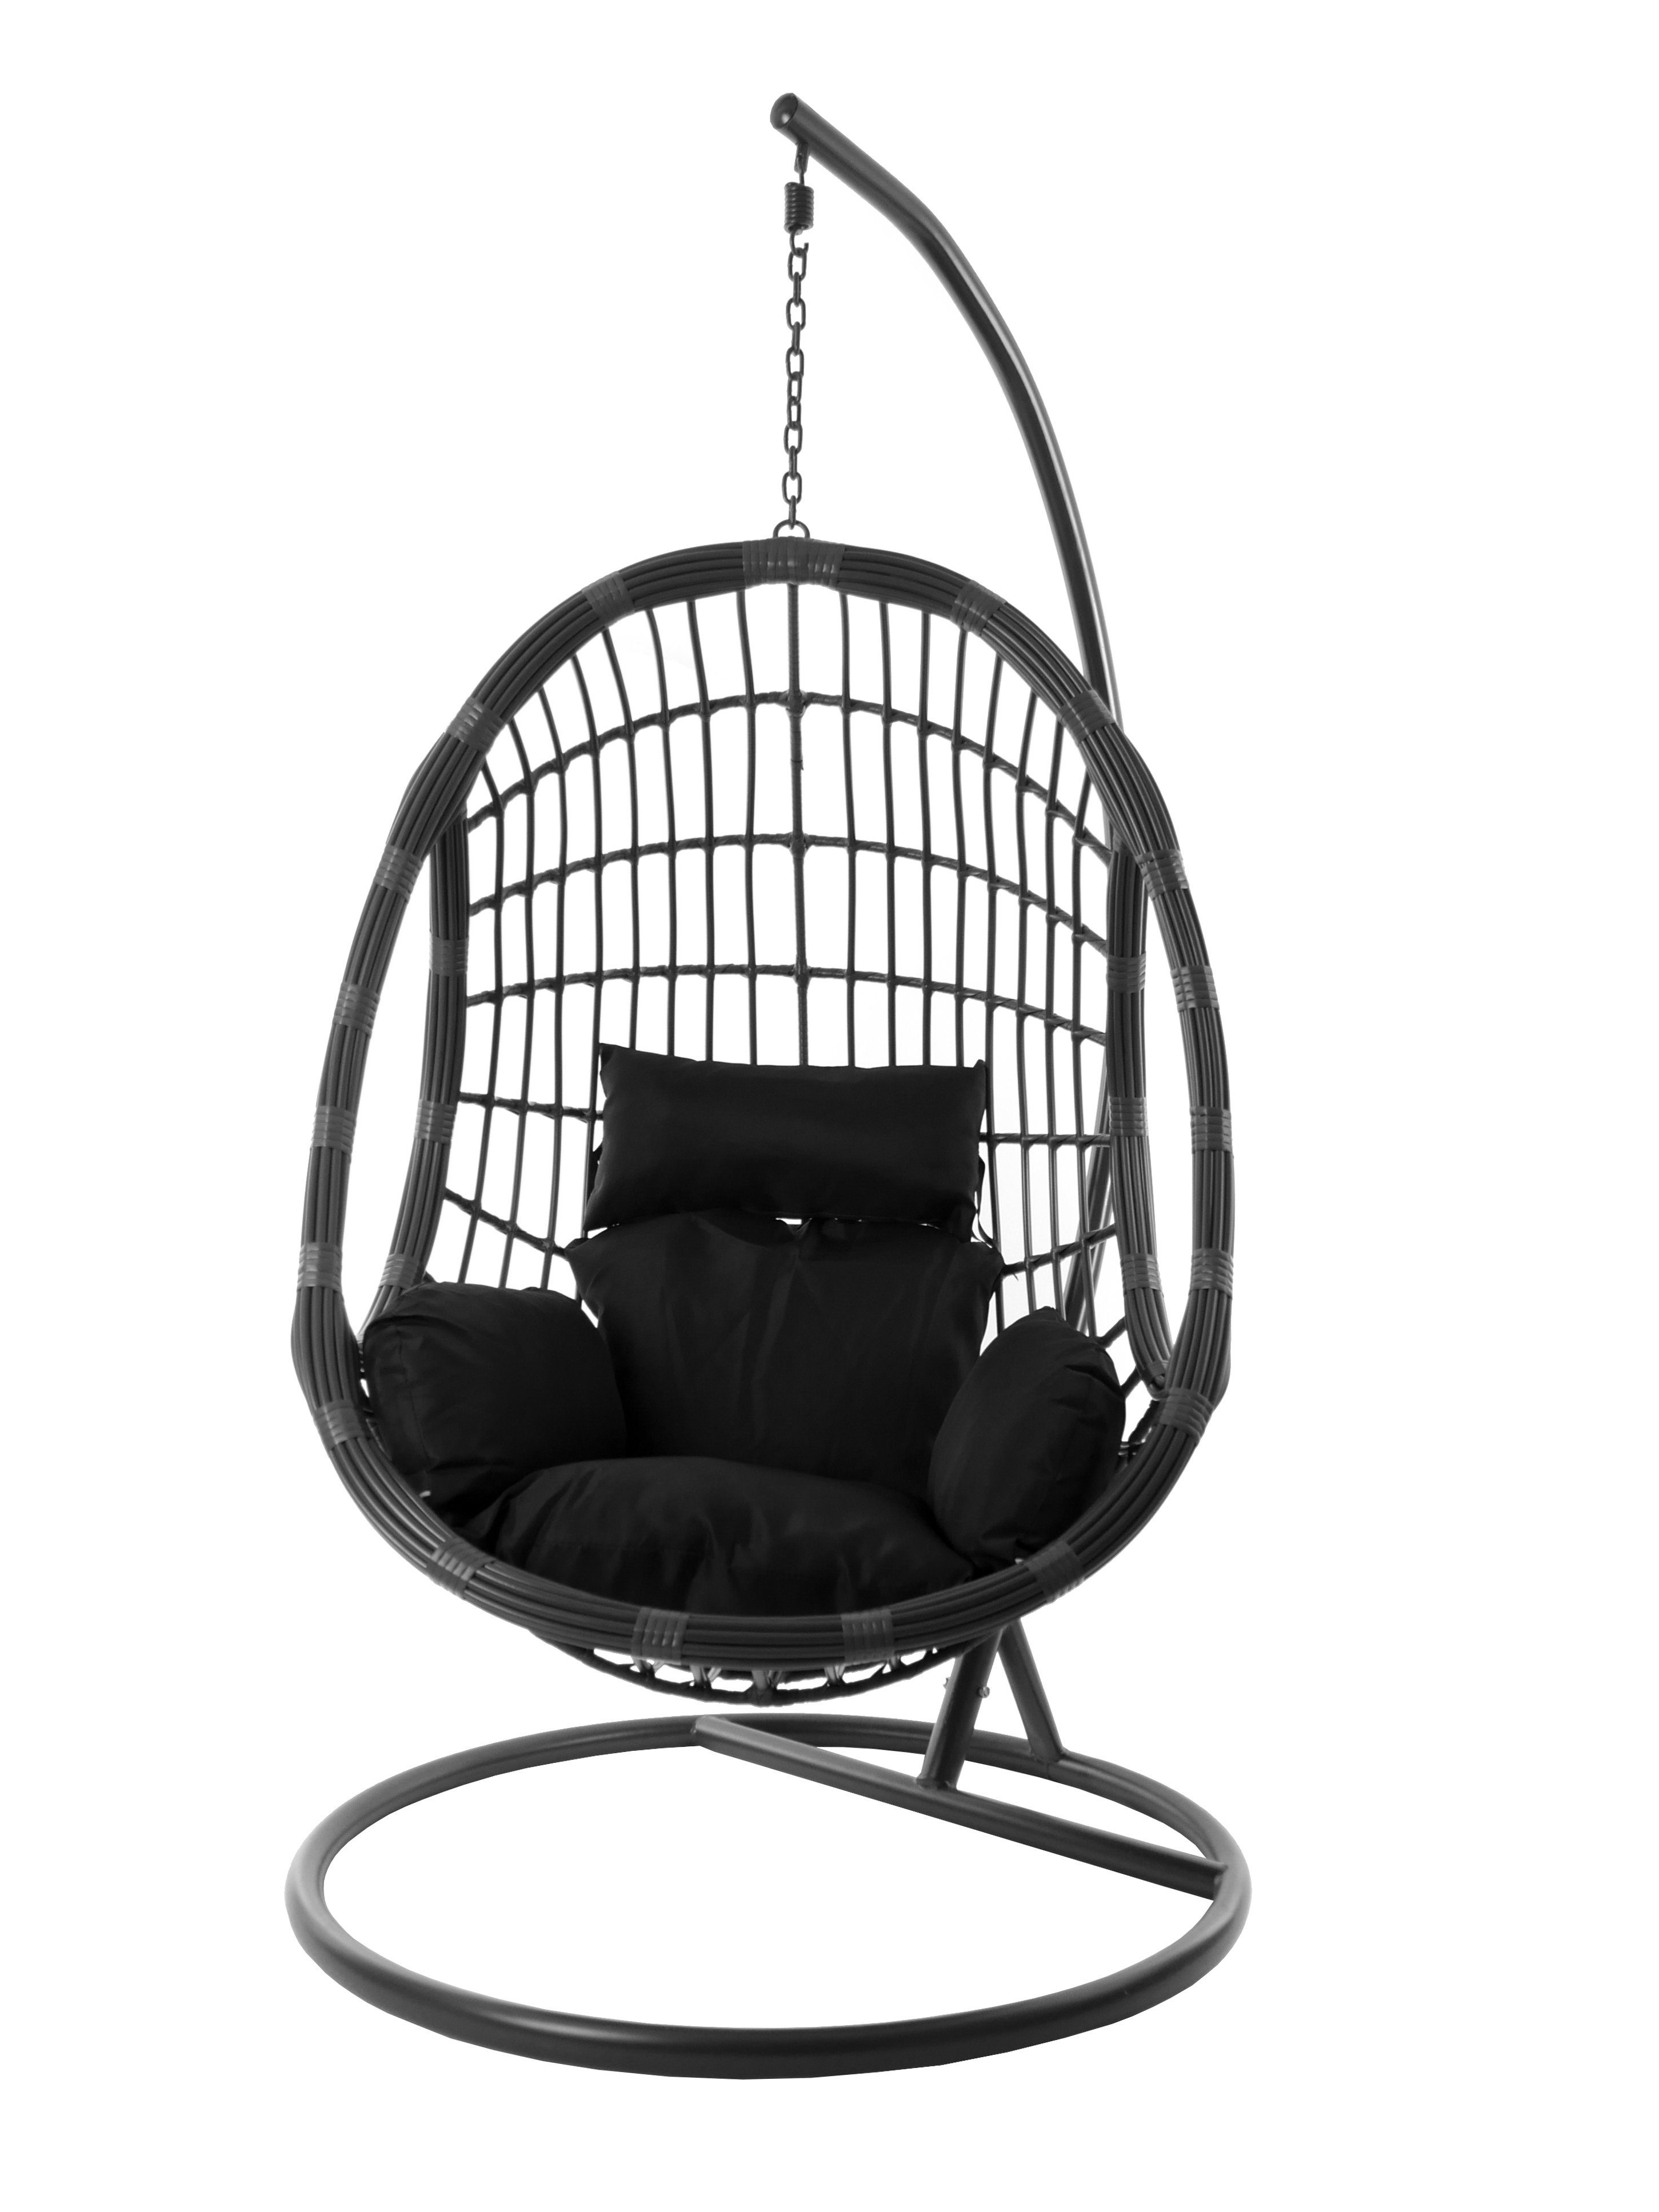 grau, in Hängesessel Loungemöbel PALMANOVA farbige (9999 mit Hängesessel Nest-Kissen black) grau, Kissen, schwarz Hängestuhl und moderne KIDEO Gestell